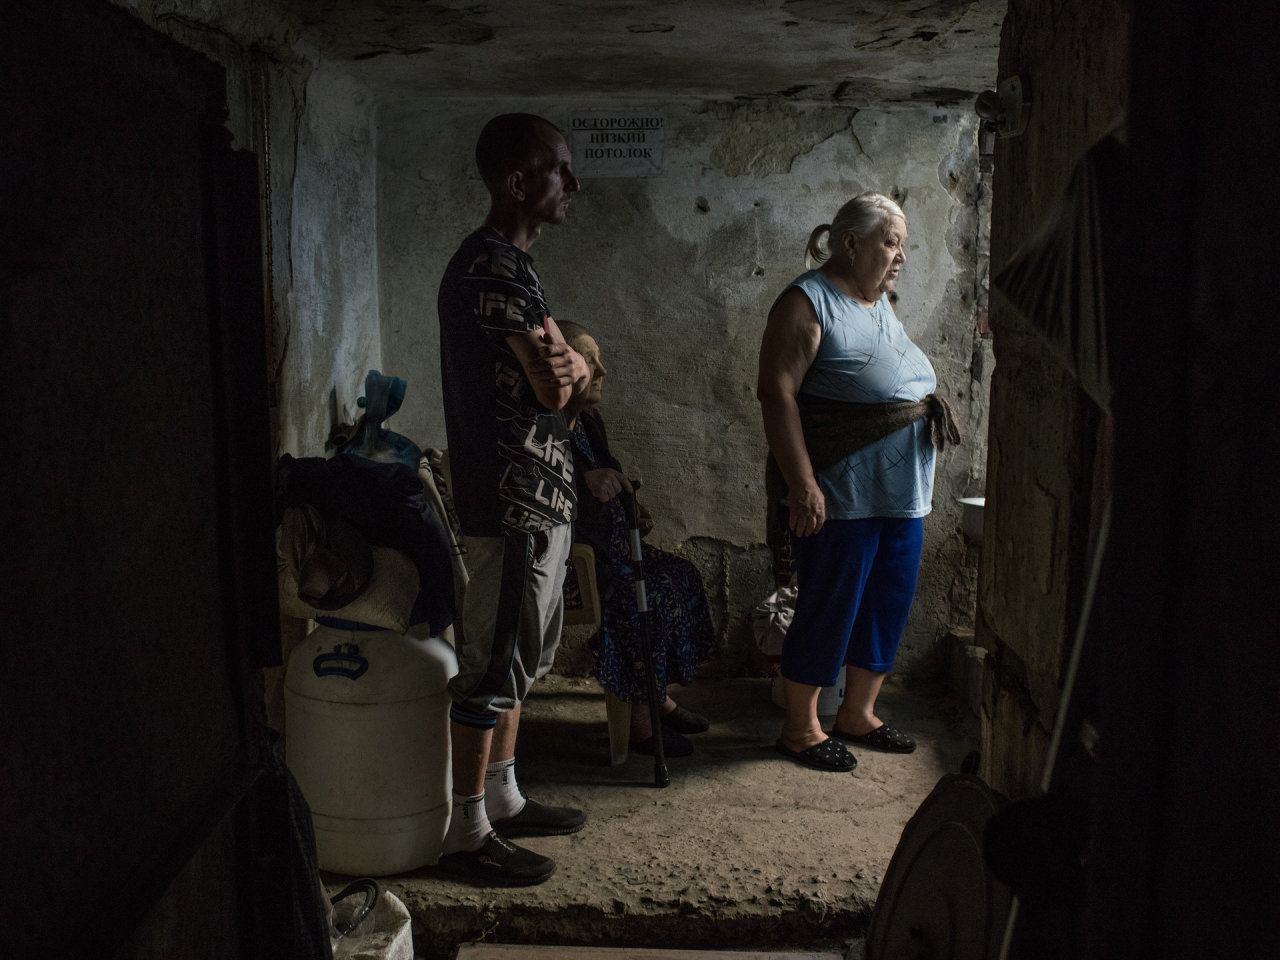 Rytų Ukrainos gyventojai raginami evakuotis, bet skuba ne visi – kodėl?